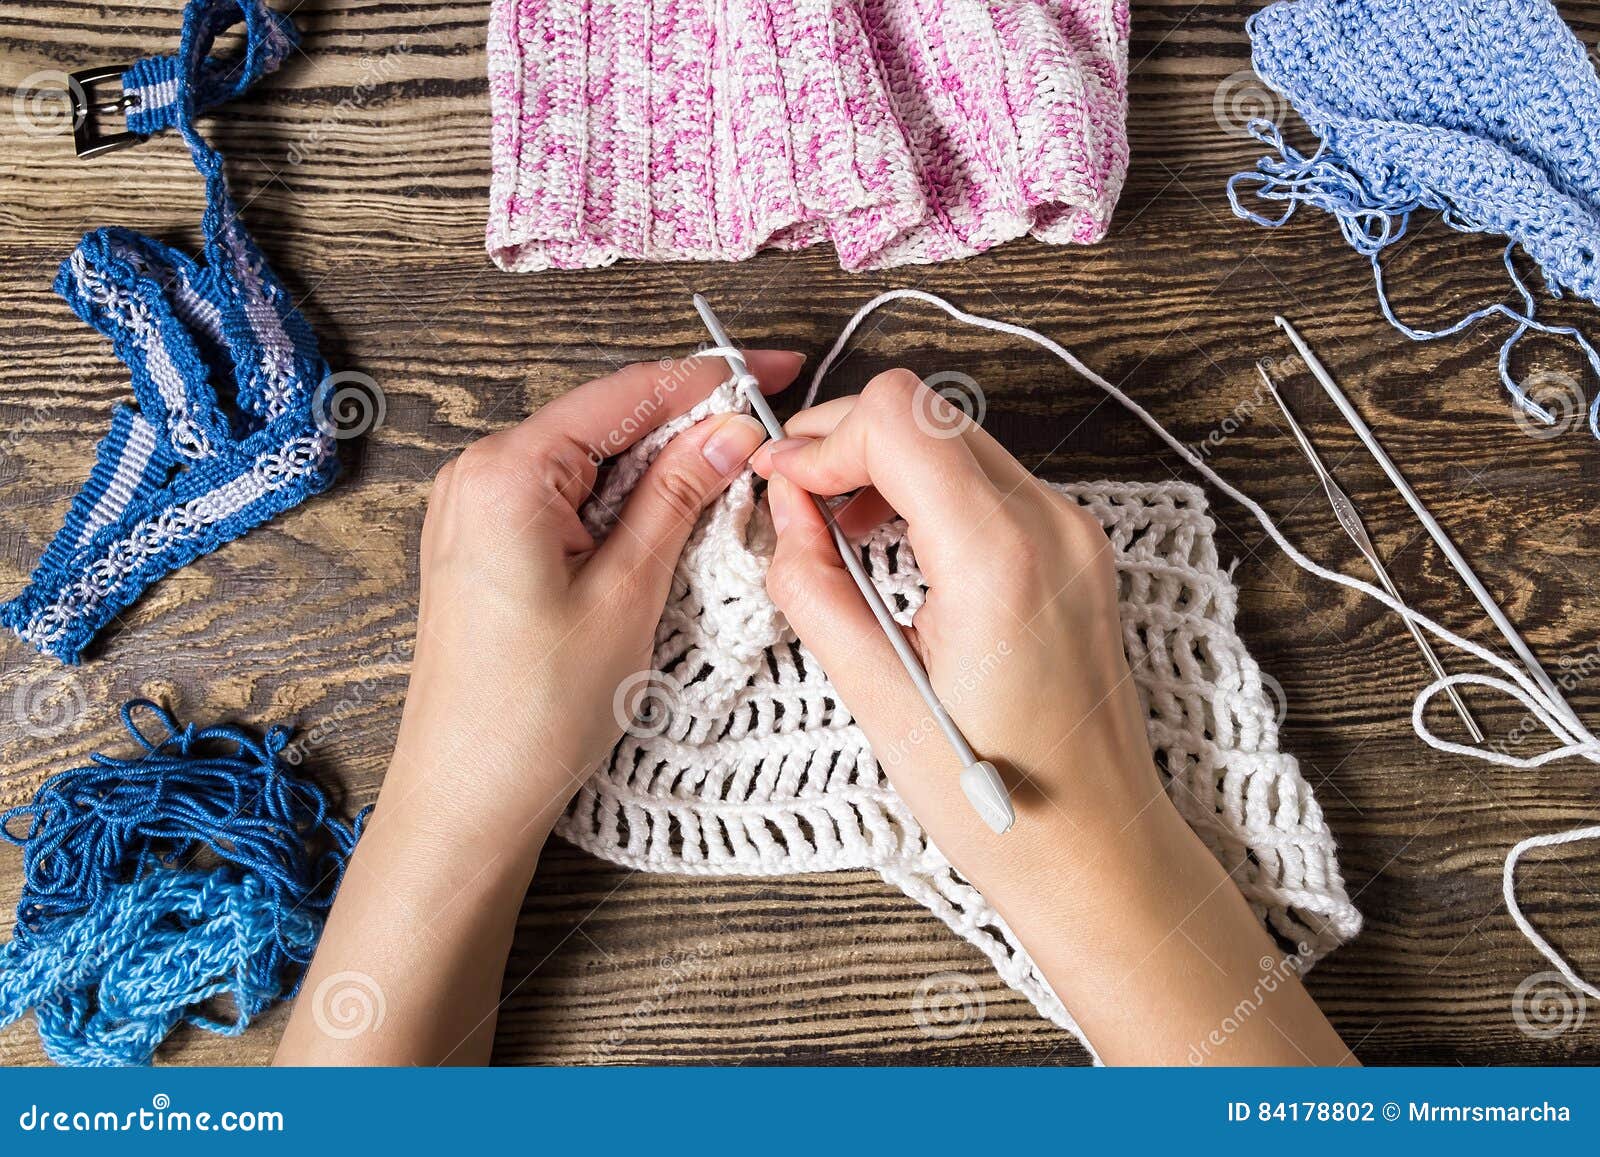 Knitting hands. Фото вязание женские руки. Женщина с одной рукой вяжет крючком.